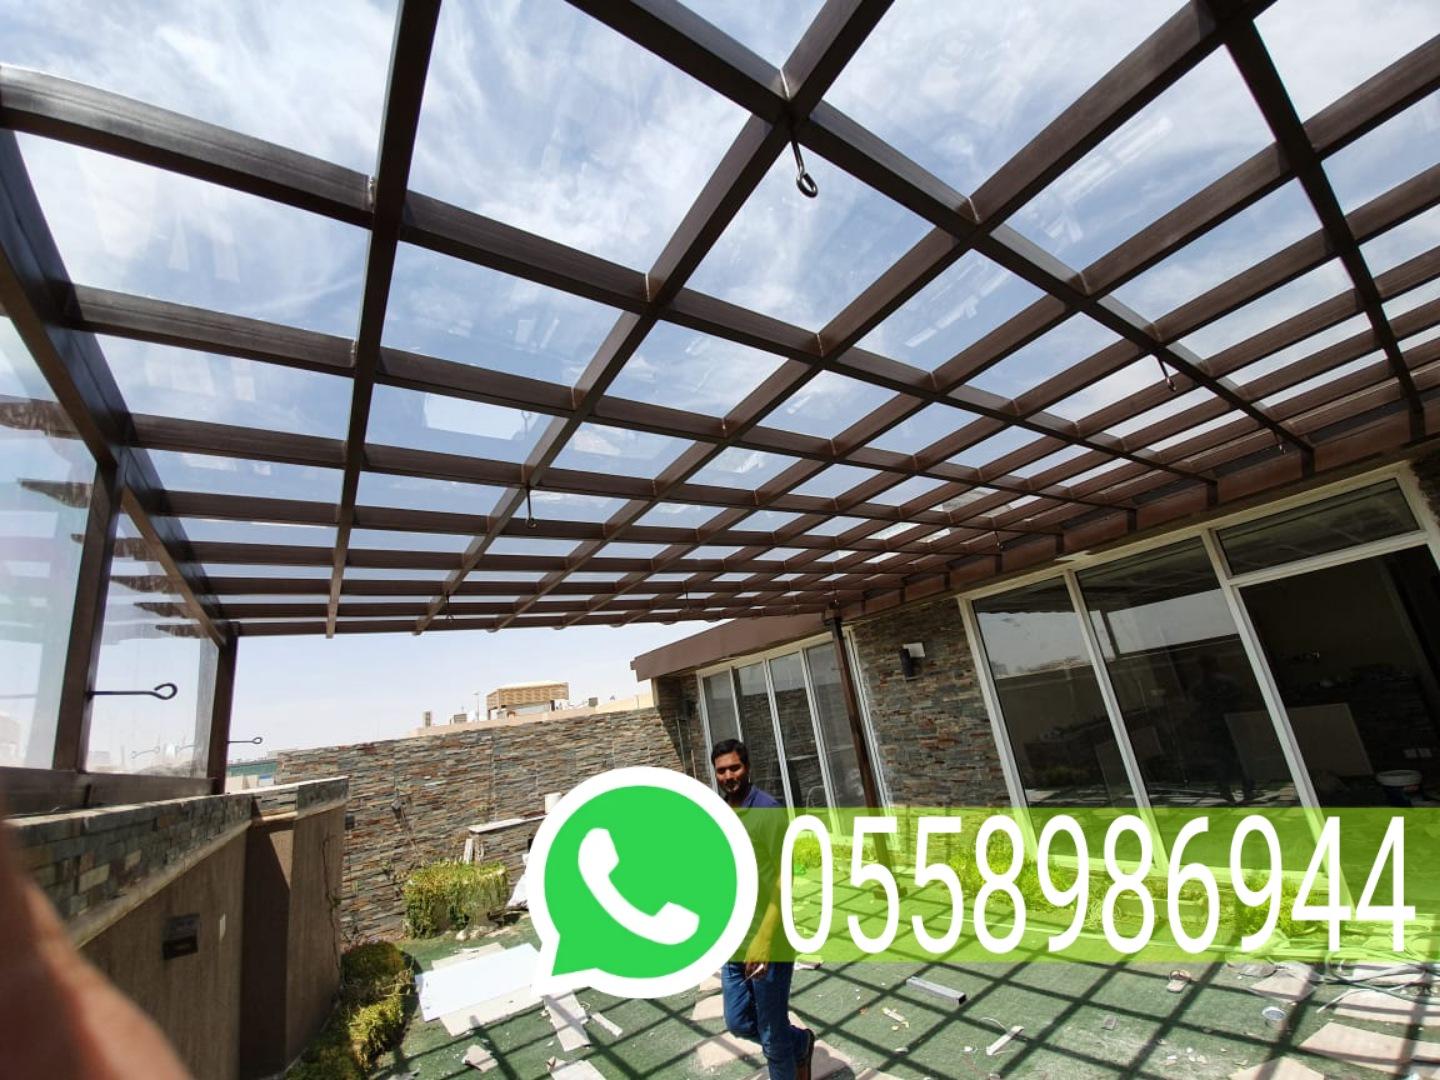 تنسيق حدائق وتركيب برجولات مودرن في مكة المكرمة,0558986944 296060306